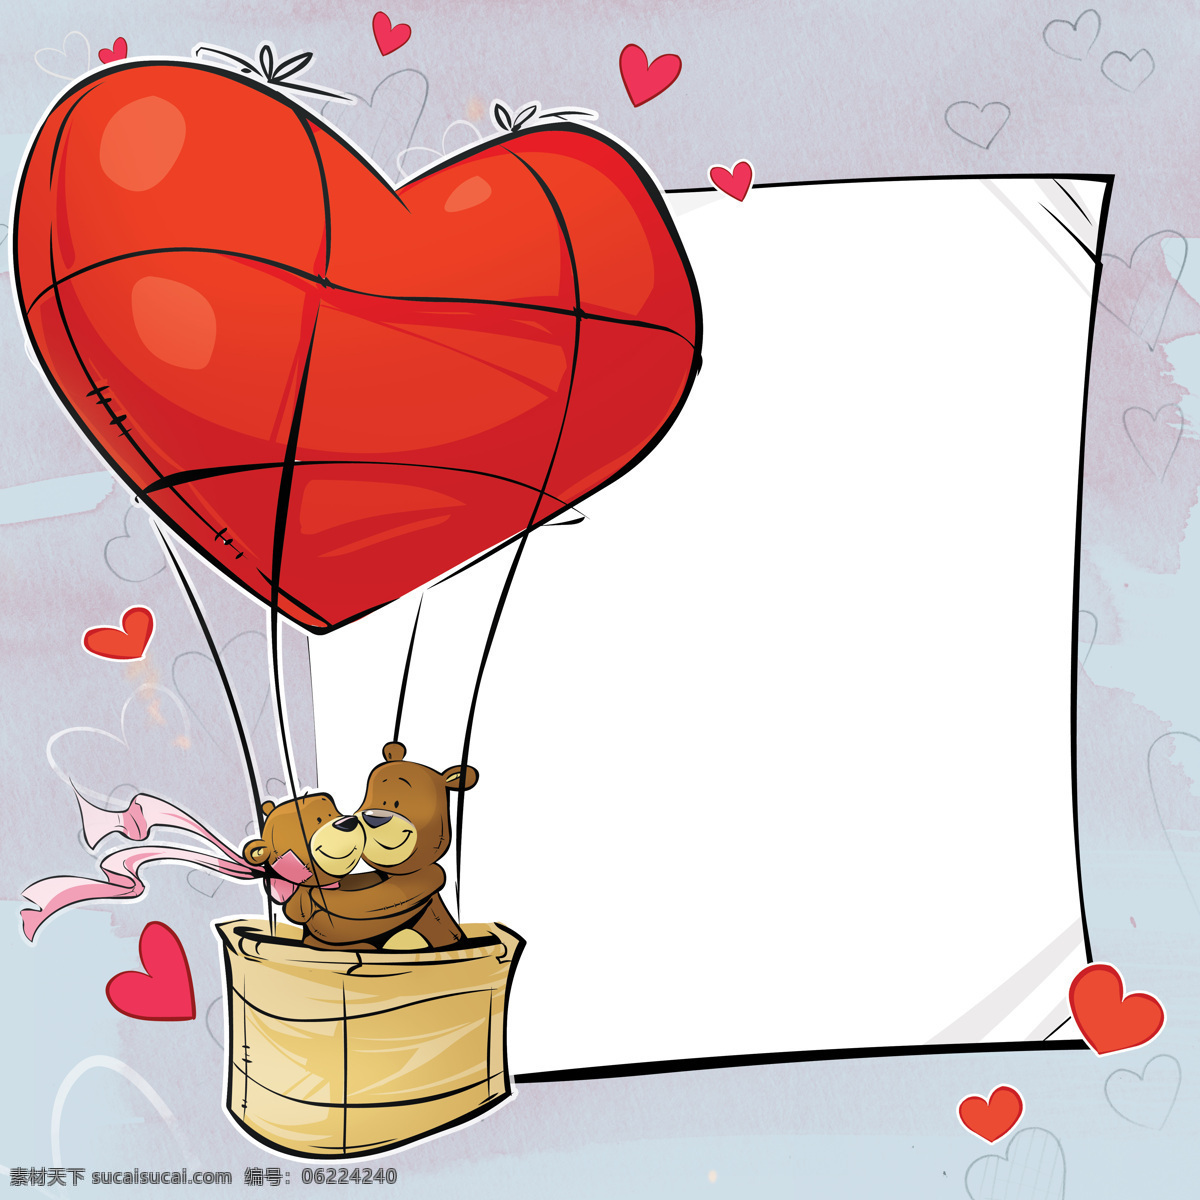 卡通 情人节 卡片 节日 情人节卡片 可爱小熊 爱心 亲密 拥抱 热气球 节日庆典 生活百科